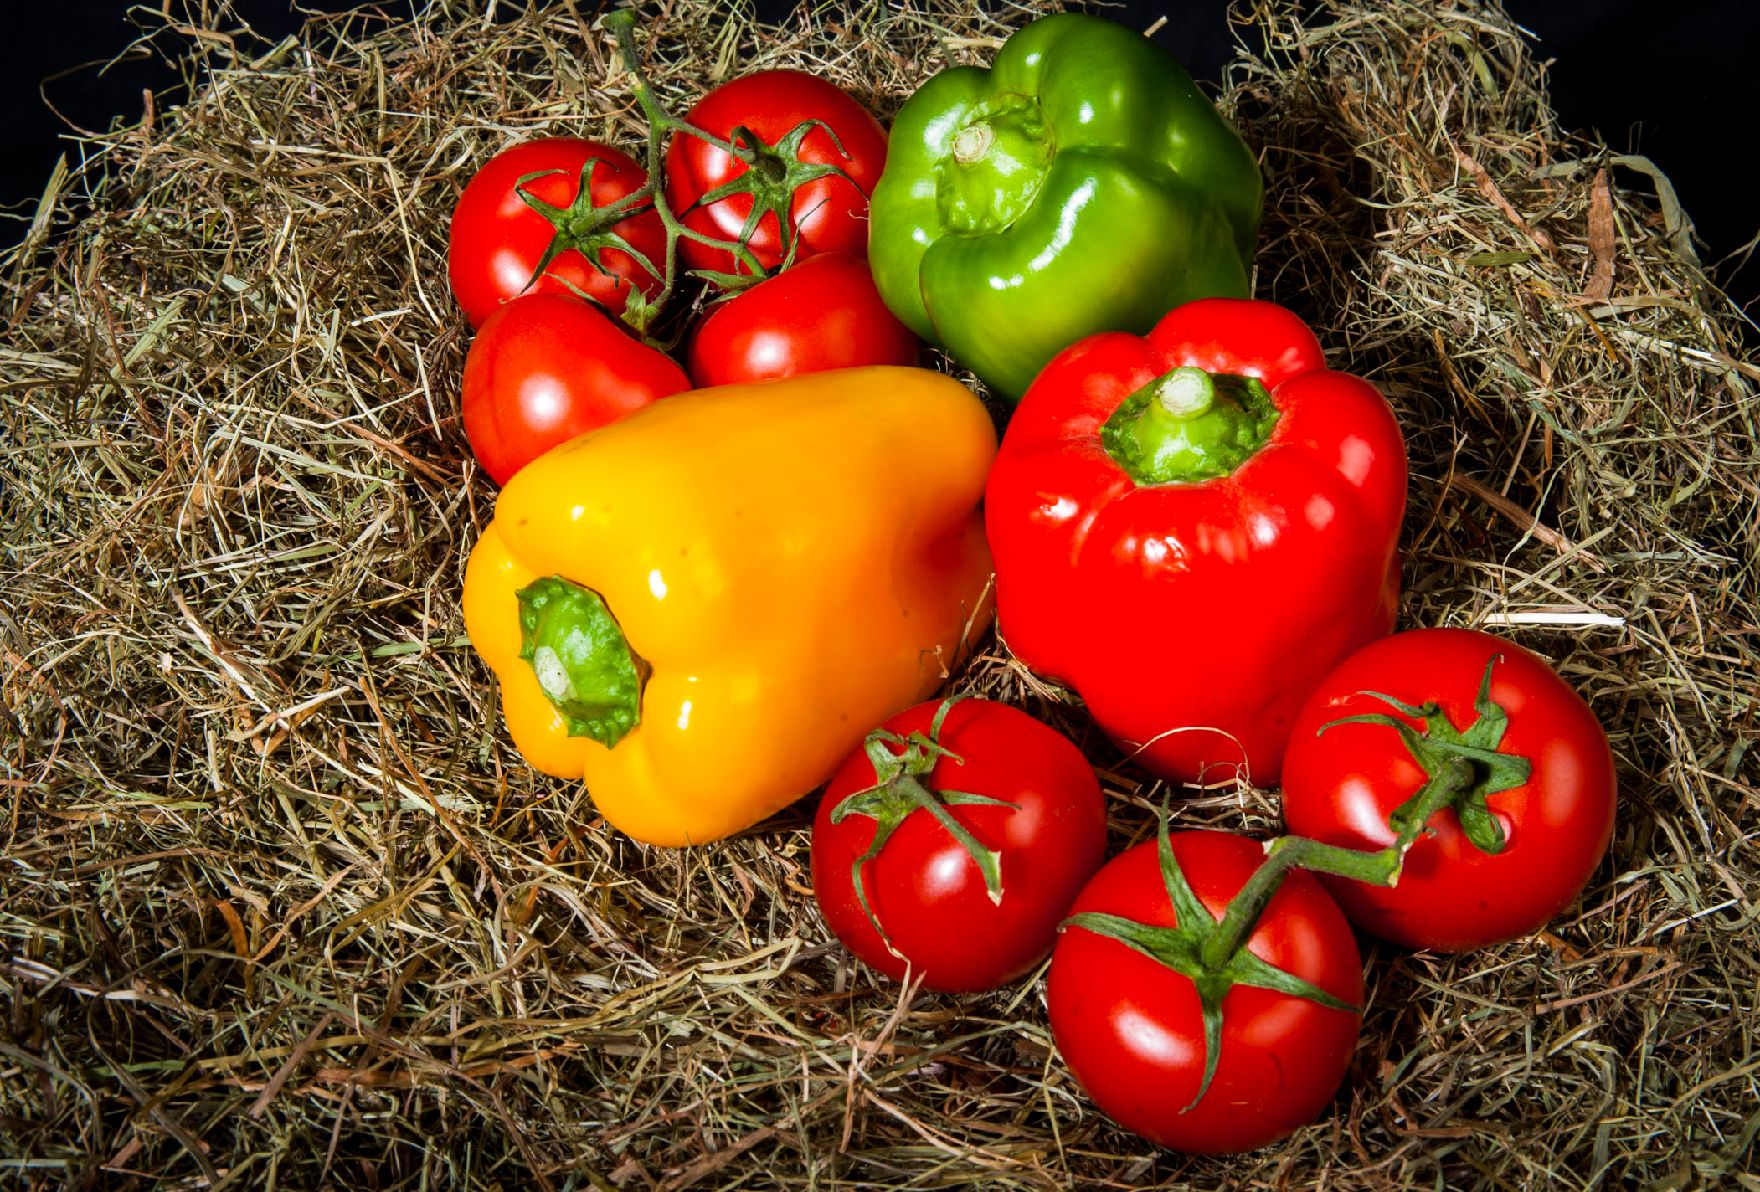 Eine Auswahl von Gemüse. Schlagworte: Gemüse, Heu, Lebensmittel, Natur, Paprika, Tomaten